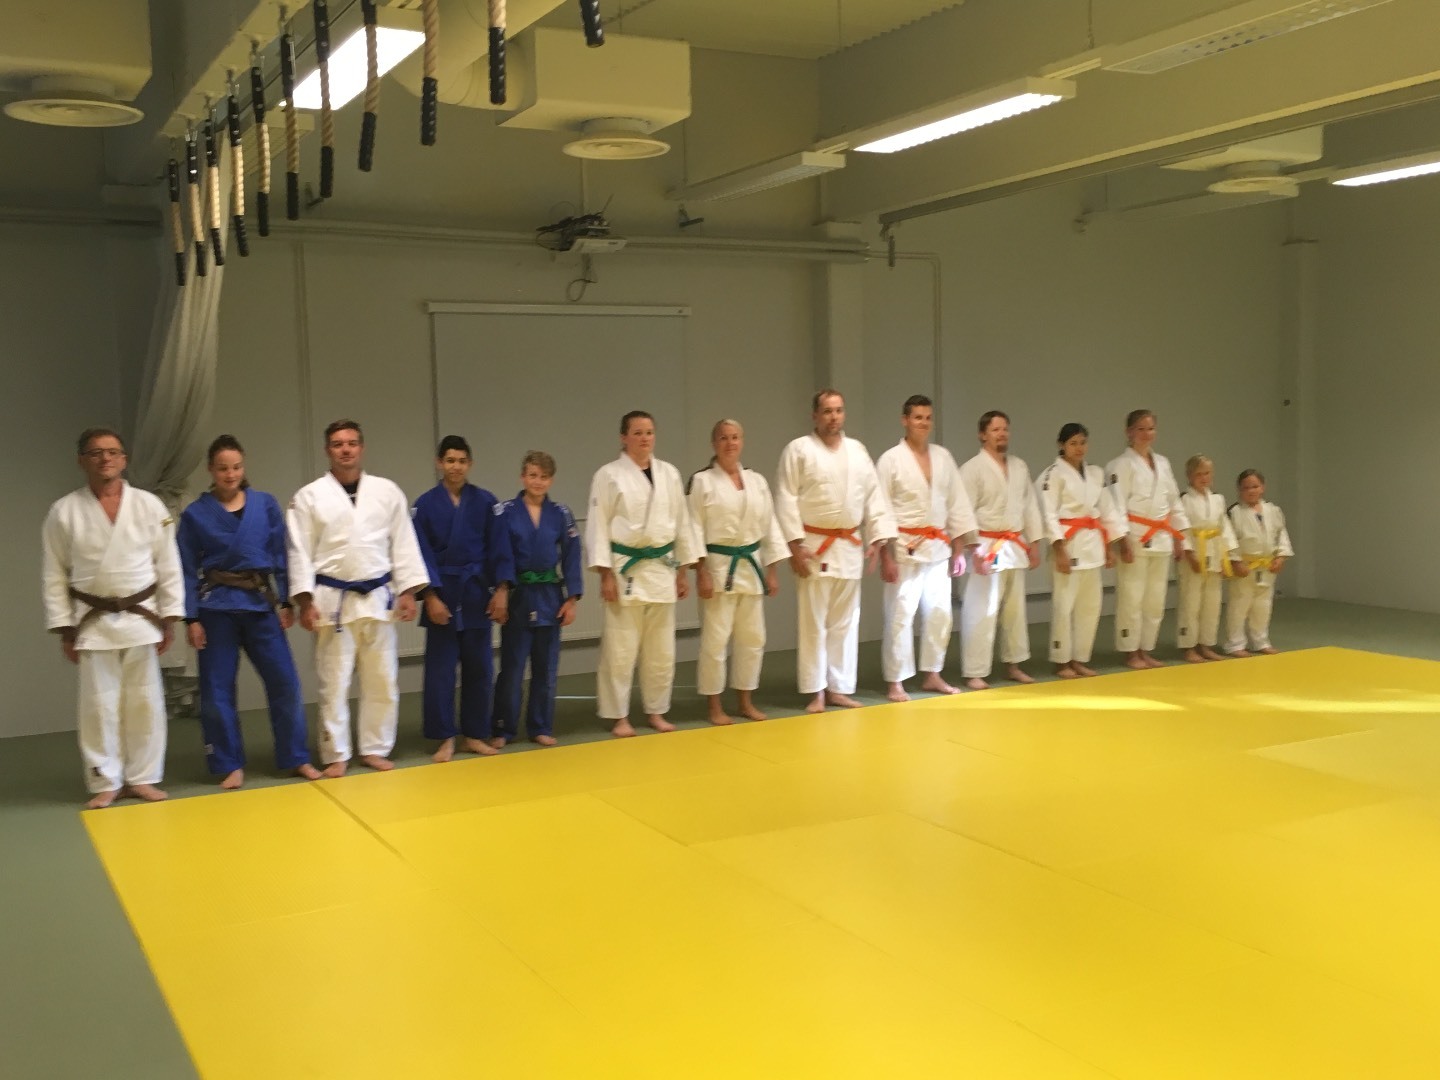 Judokausi 2017-18 käynnistyi